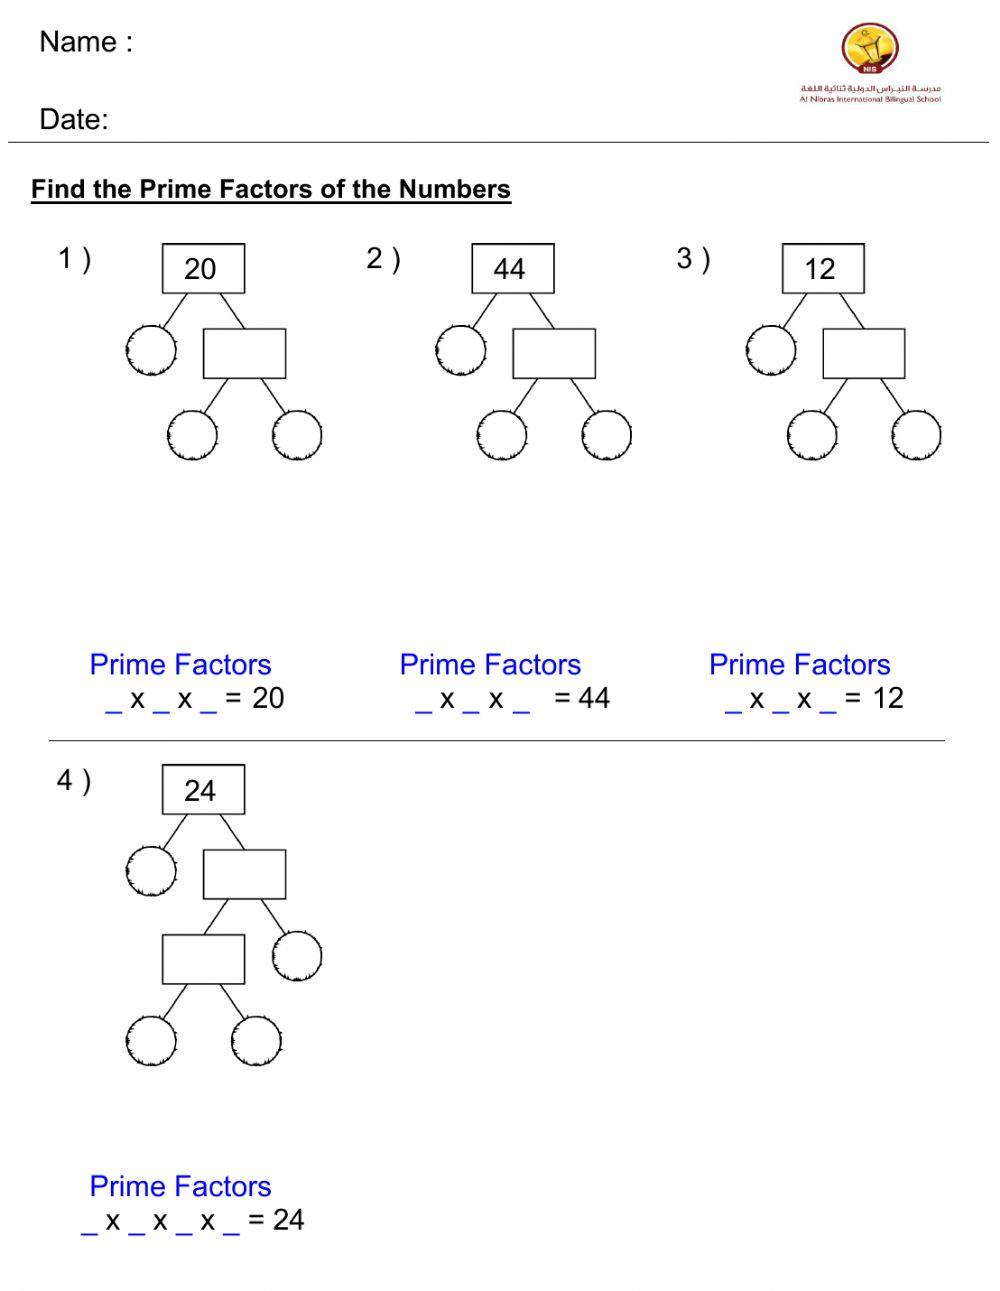 Prime factorization